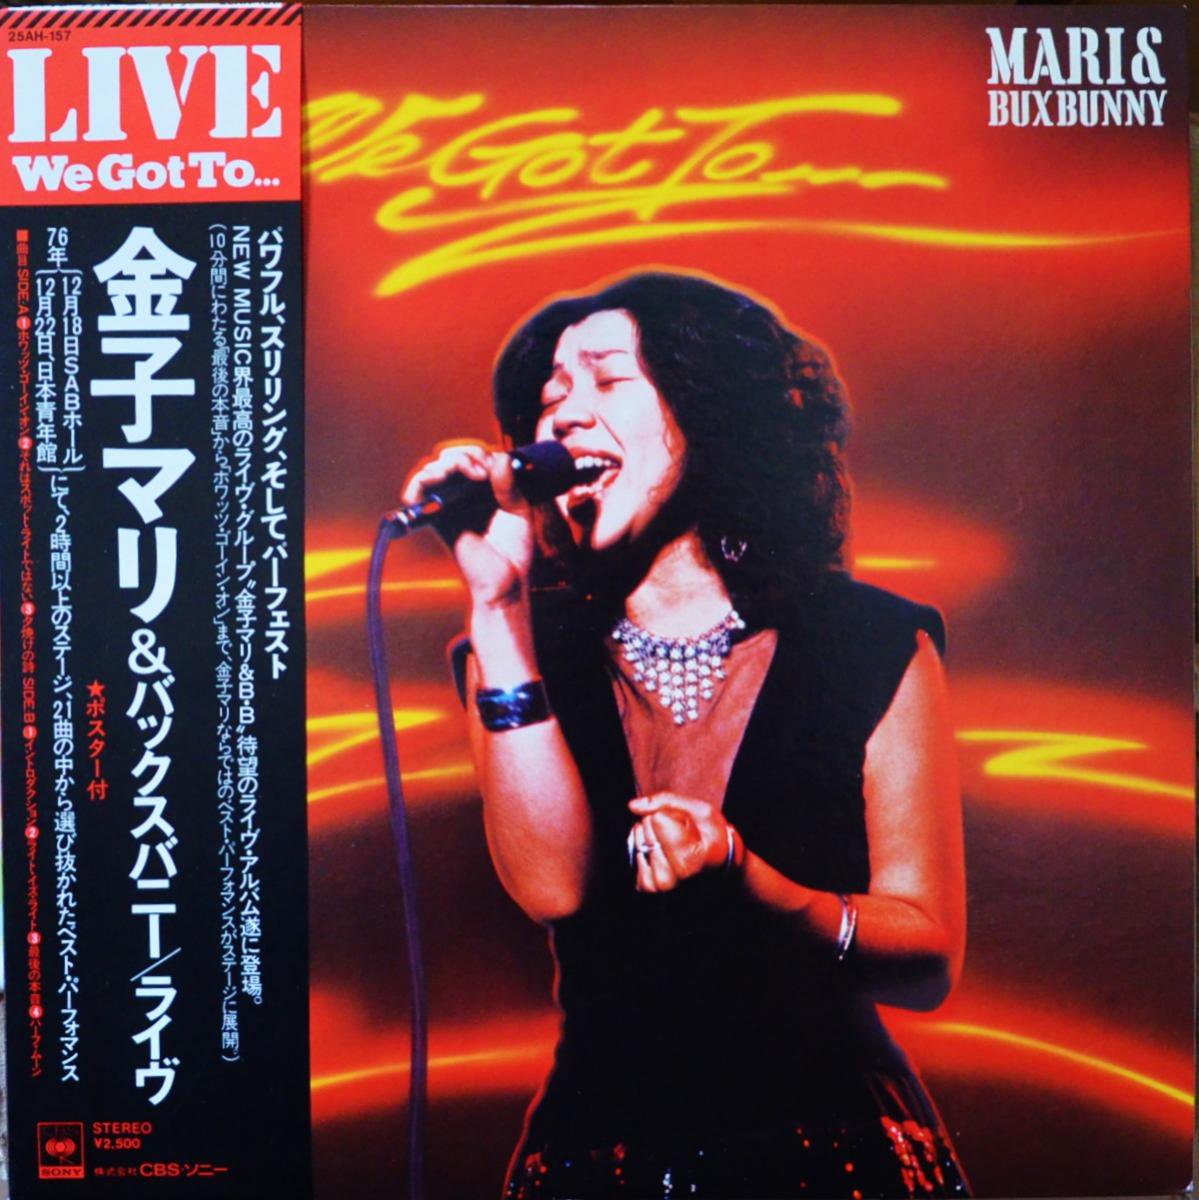 金子マリ & バックスバニー / MARI & BUX BUNNY / ライヴ LIVE WE GOT TO... (LP)